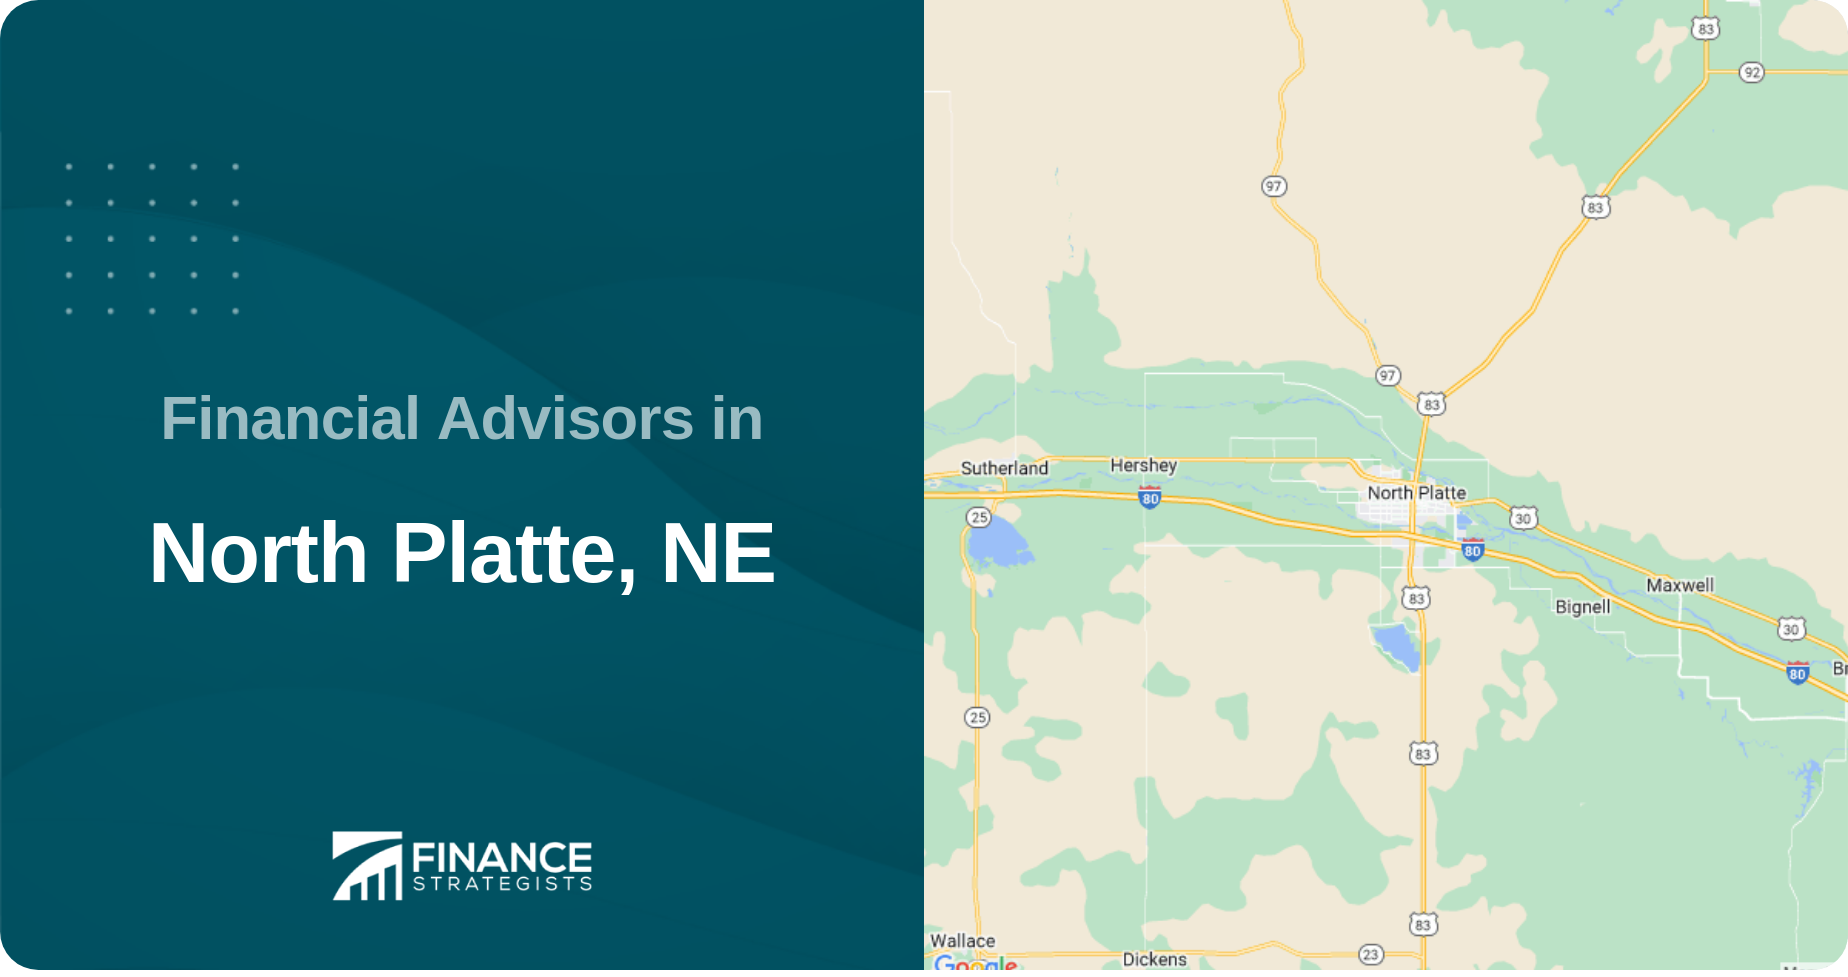 Financial Advisors in North Platte, NE